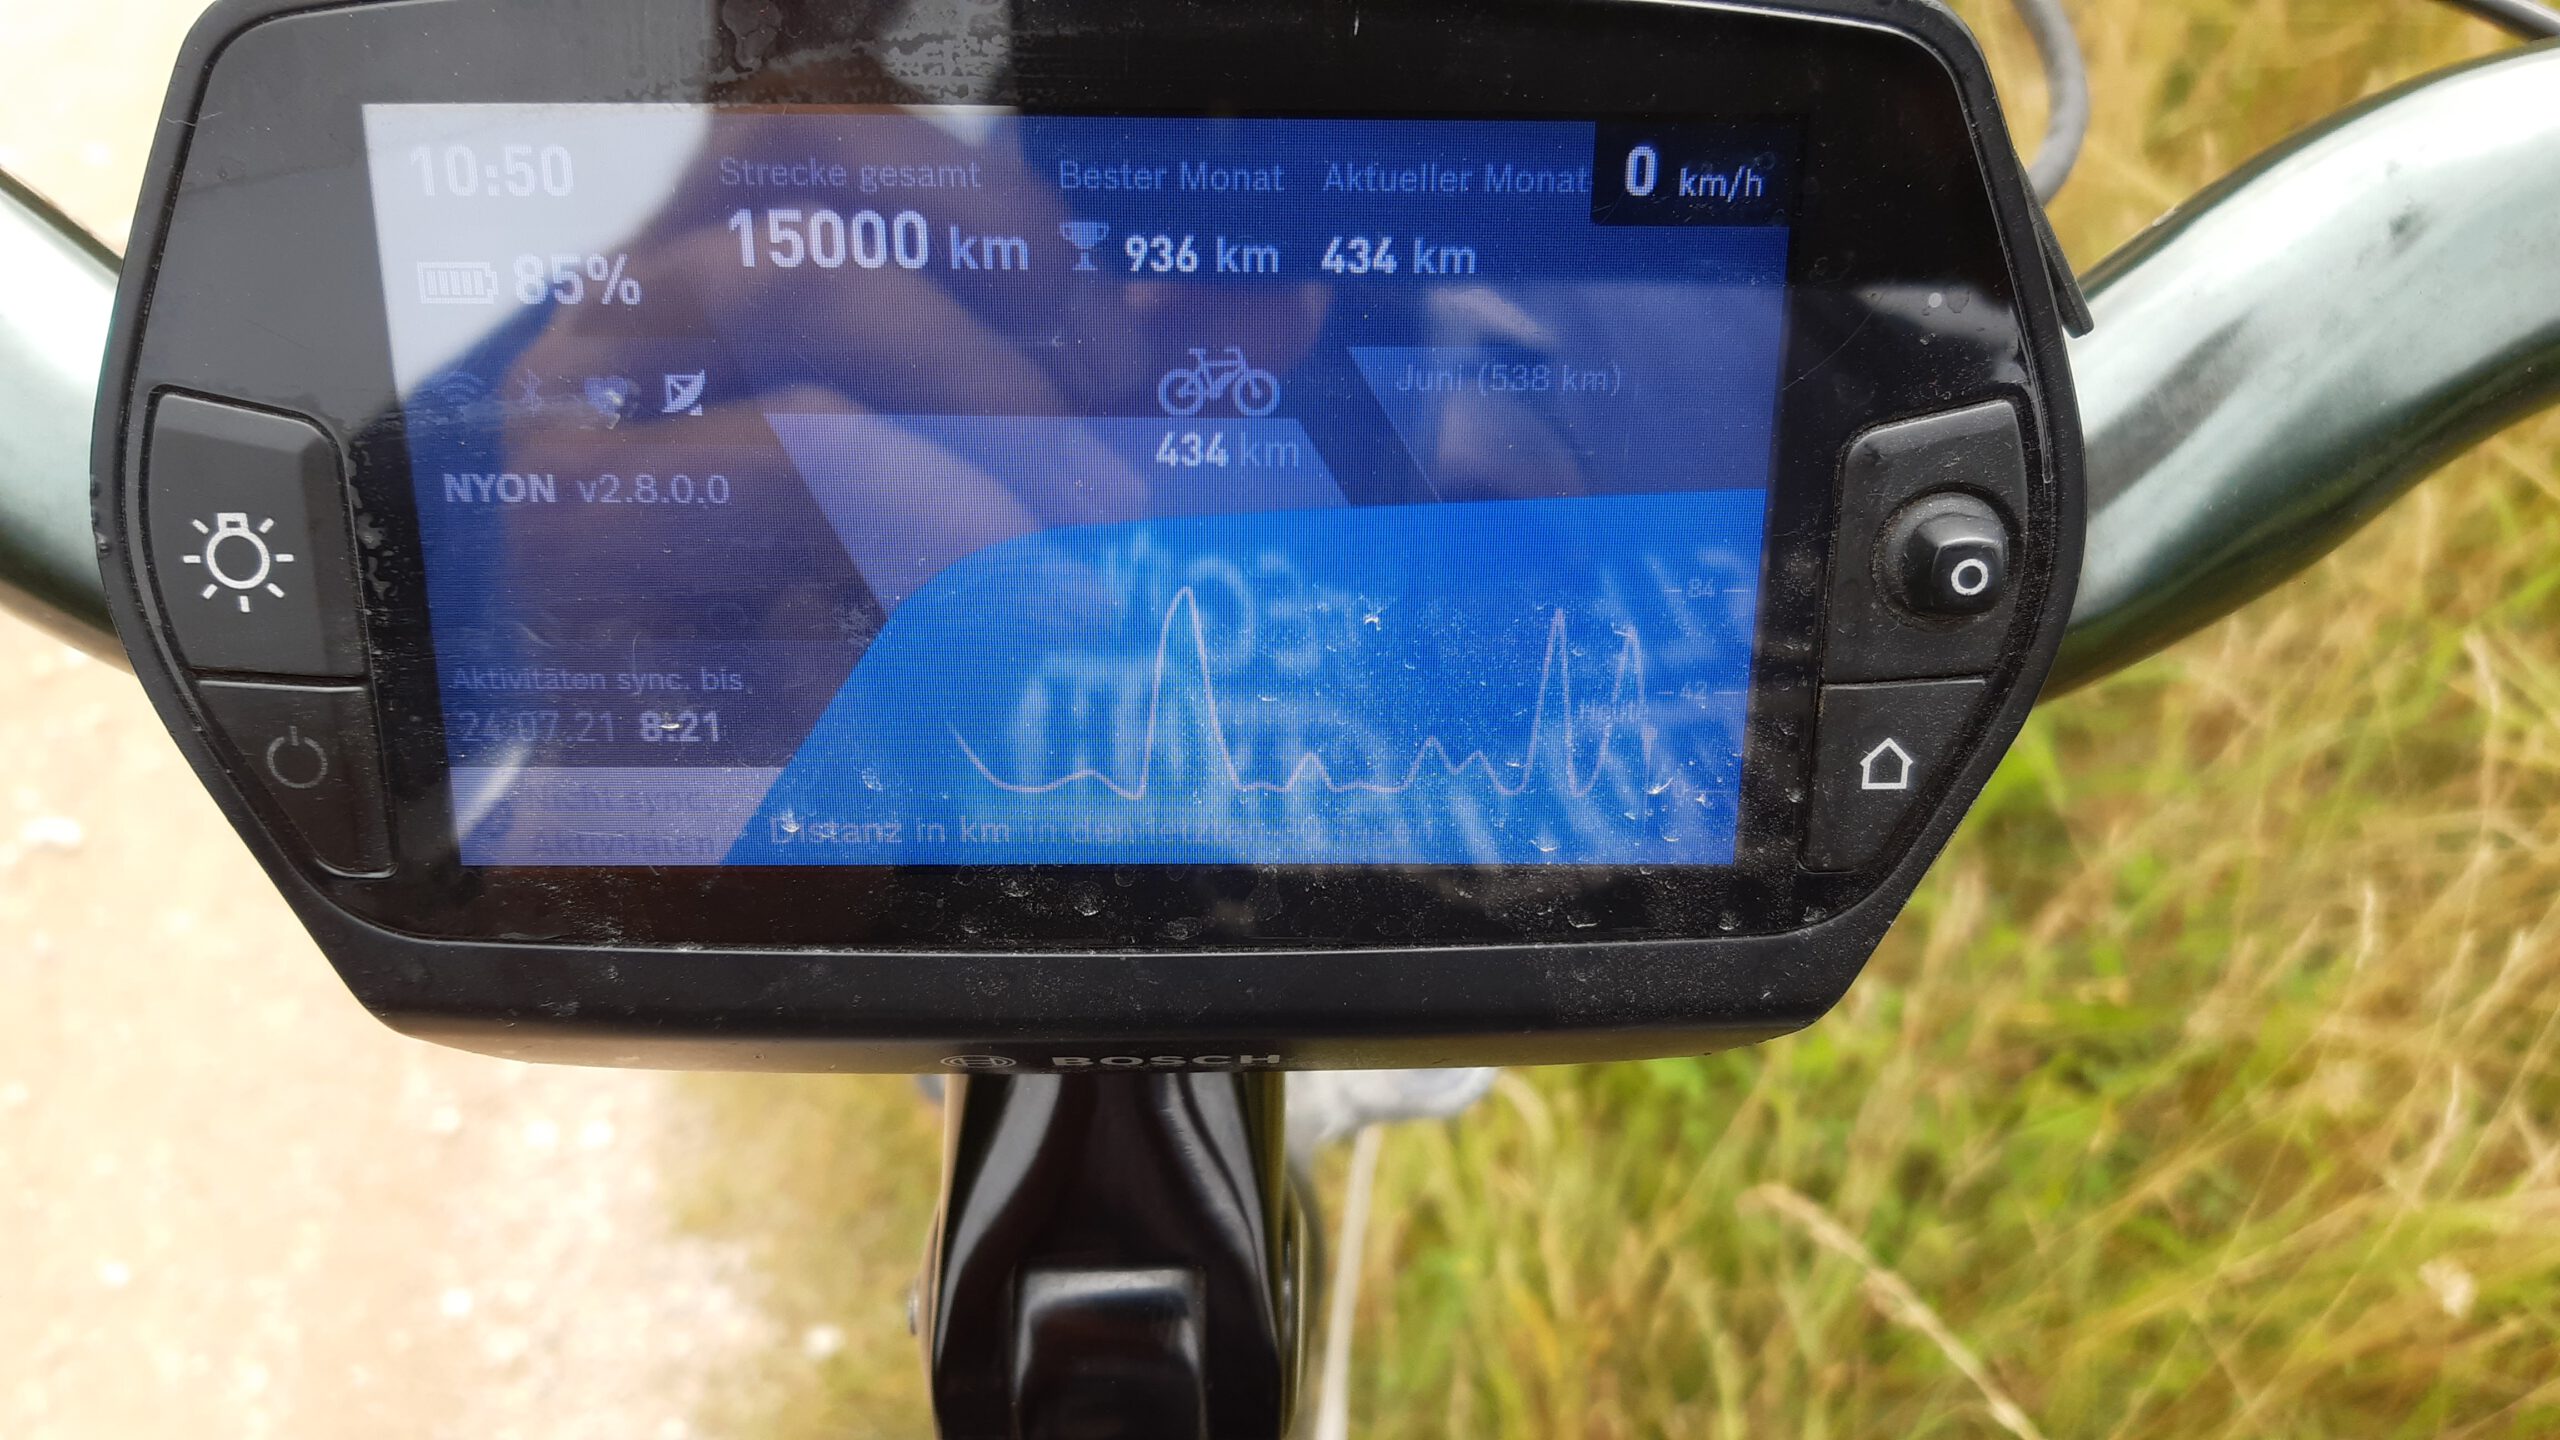 orstand Eisenhut knackt mit seinem Bike die 15.000 km Marke